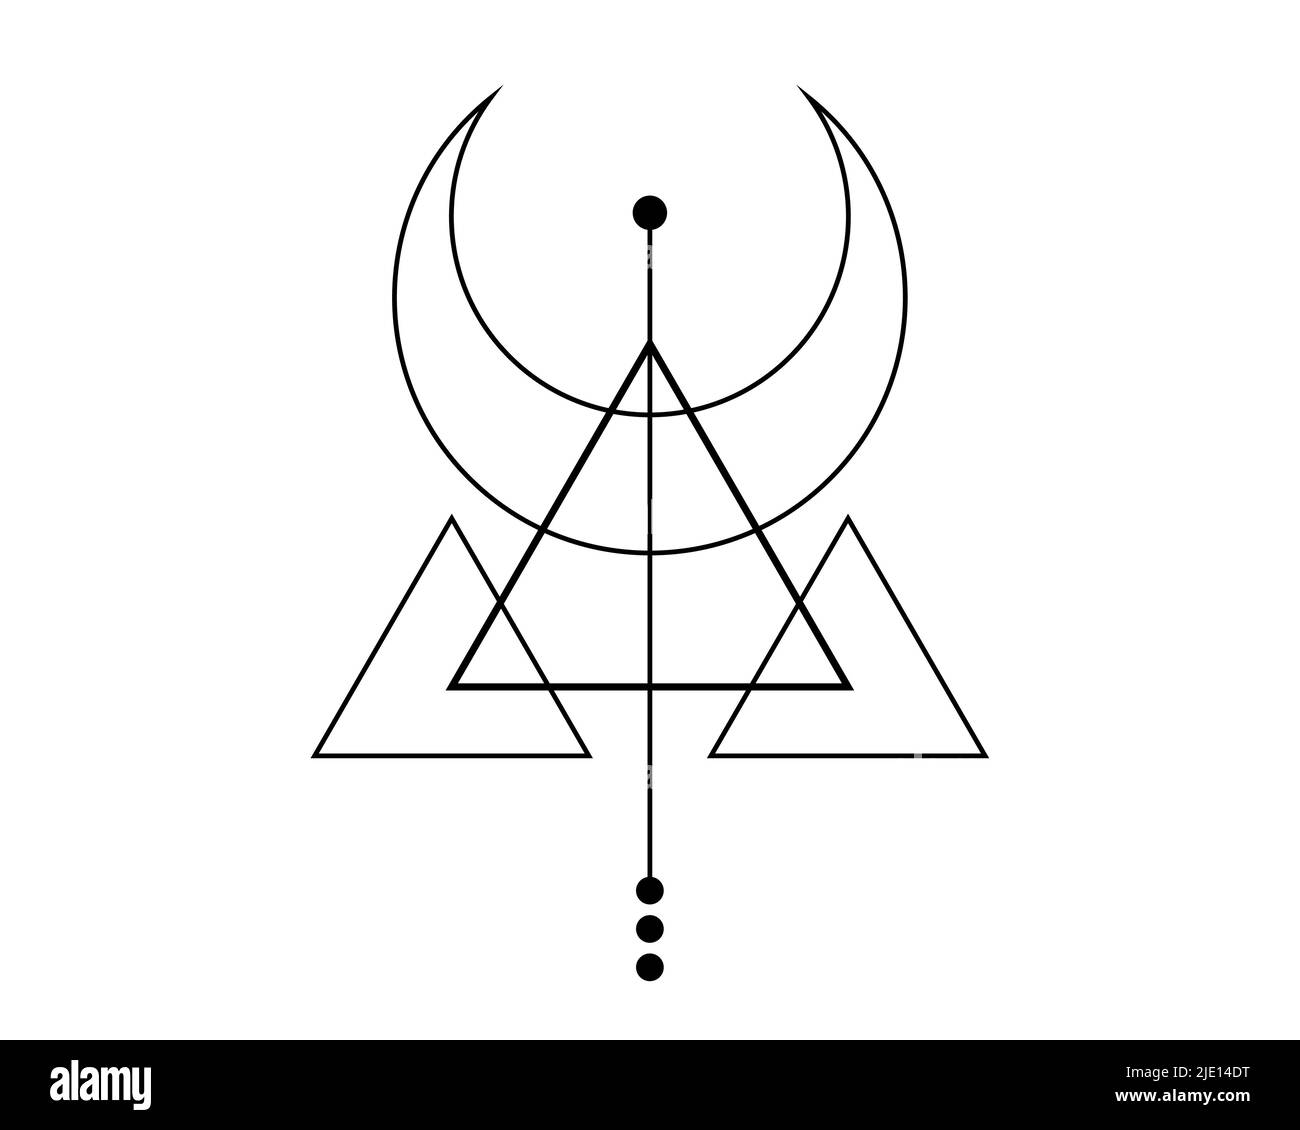 Magic Crescent Moon. Symbole de la divinité viking, géométrie sacrée celtique, tatouage logo noir, triangles ésotériques alchimie. Objet occultisme spirituel Illustration de Vecteur